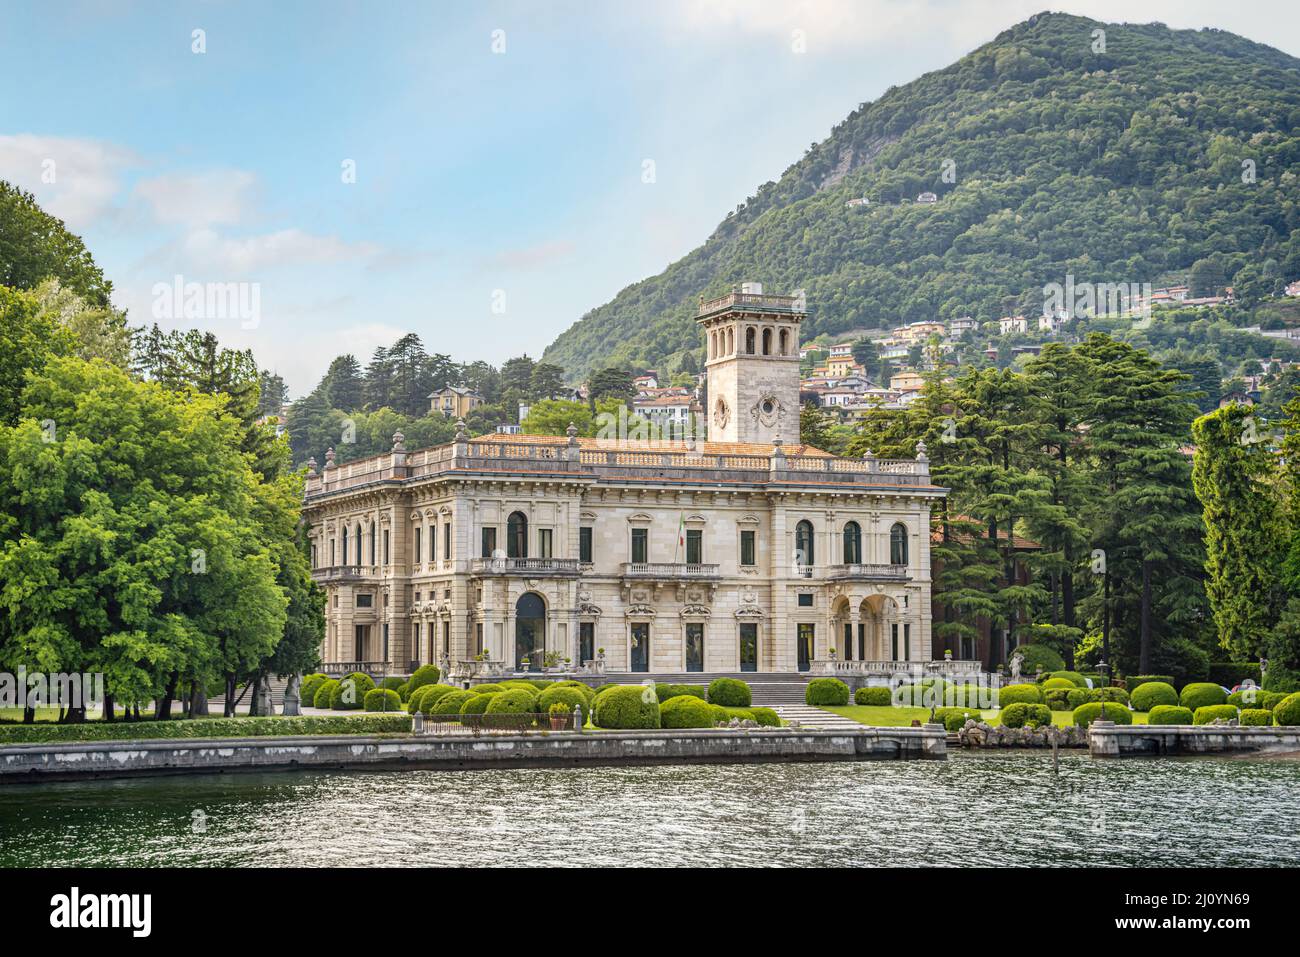 Villa Erba in Cernobbio at Lake Como, Italy Stock Photo